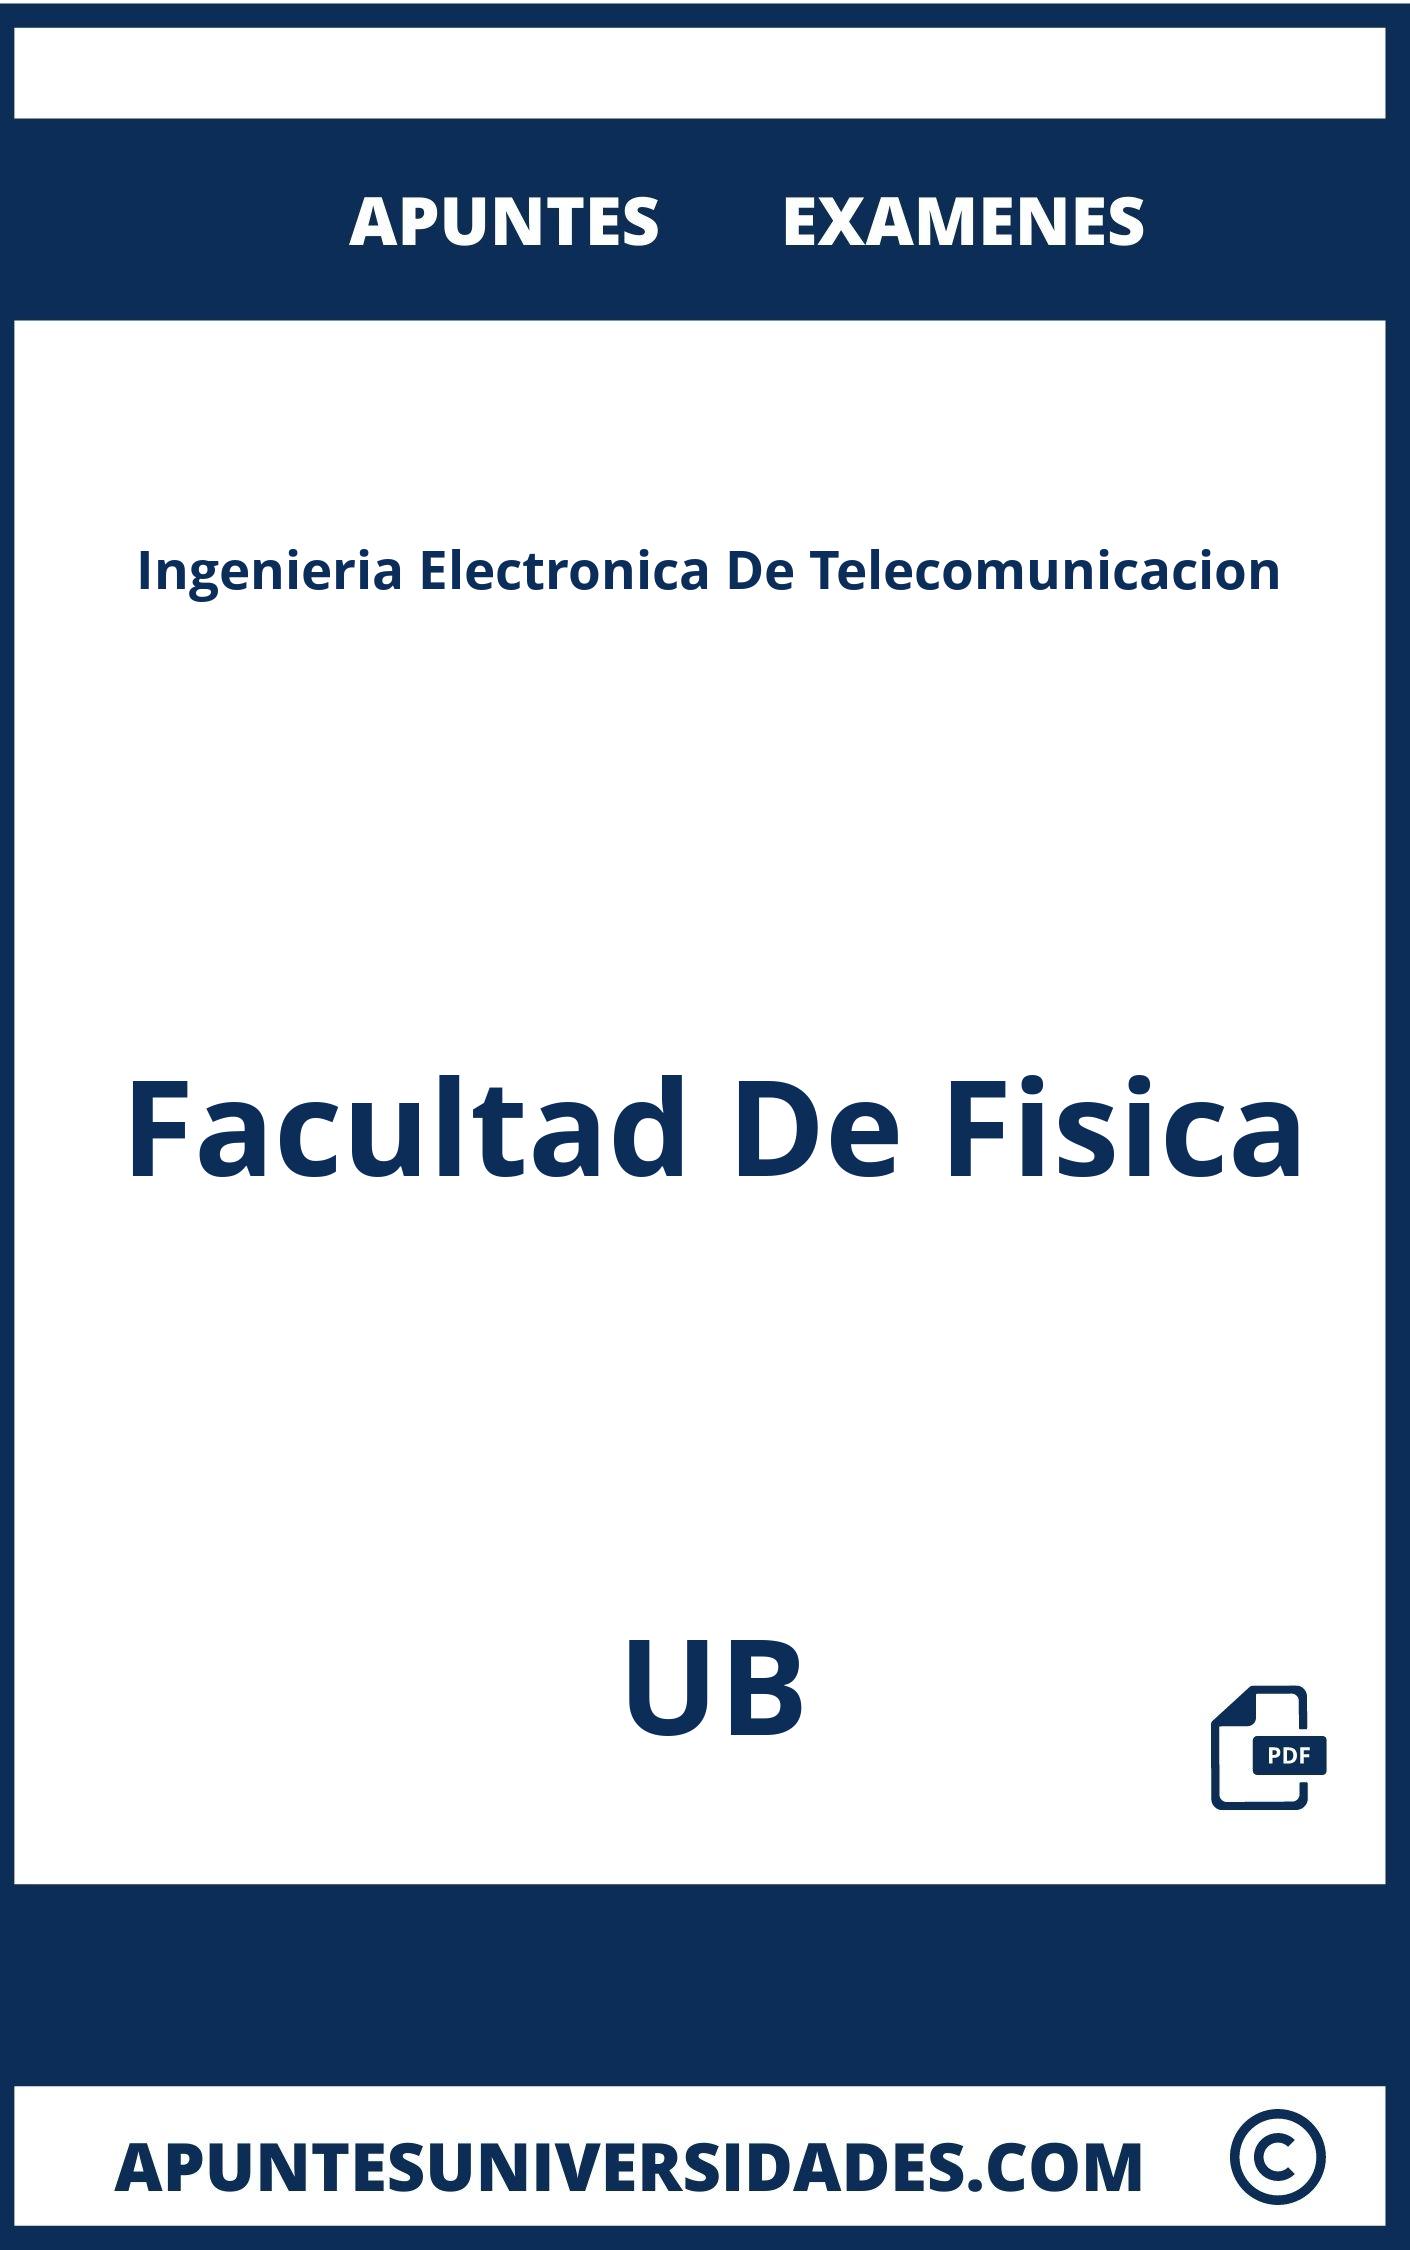 Apuntes Examenes Ingenieria Electronica De Telecomunicacion UB